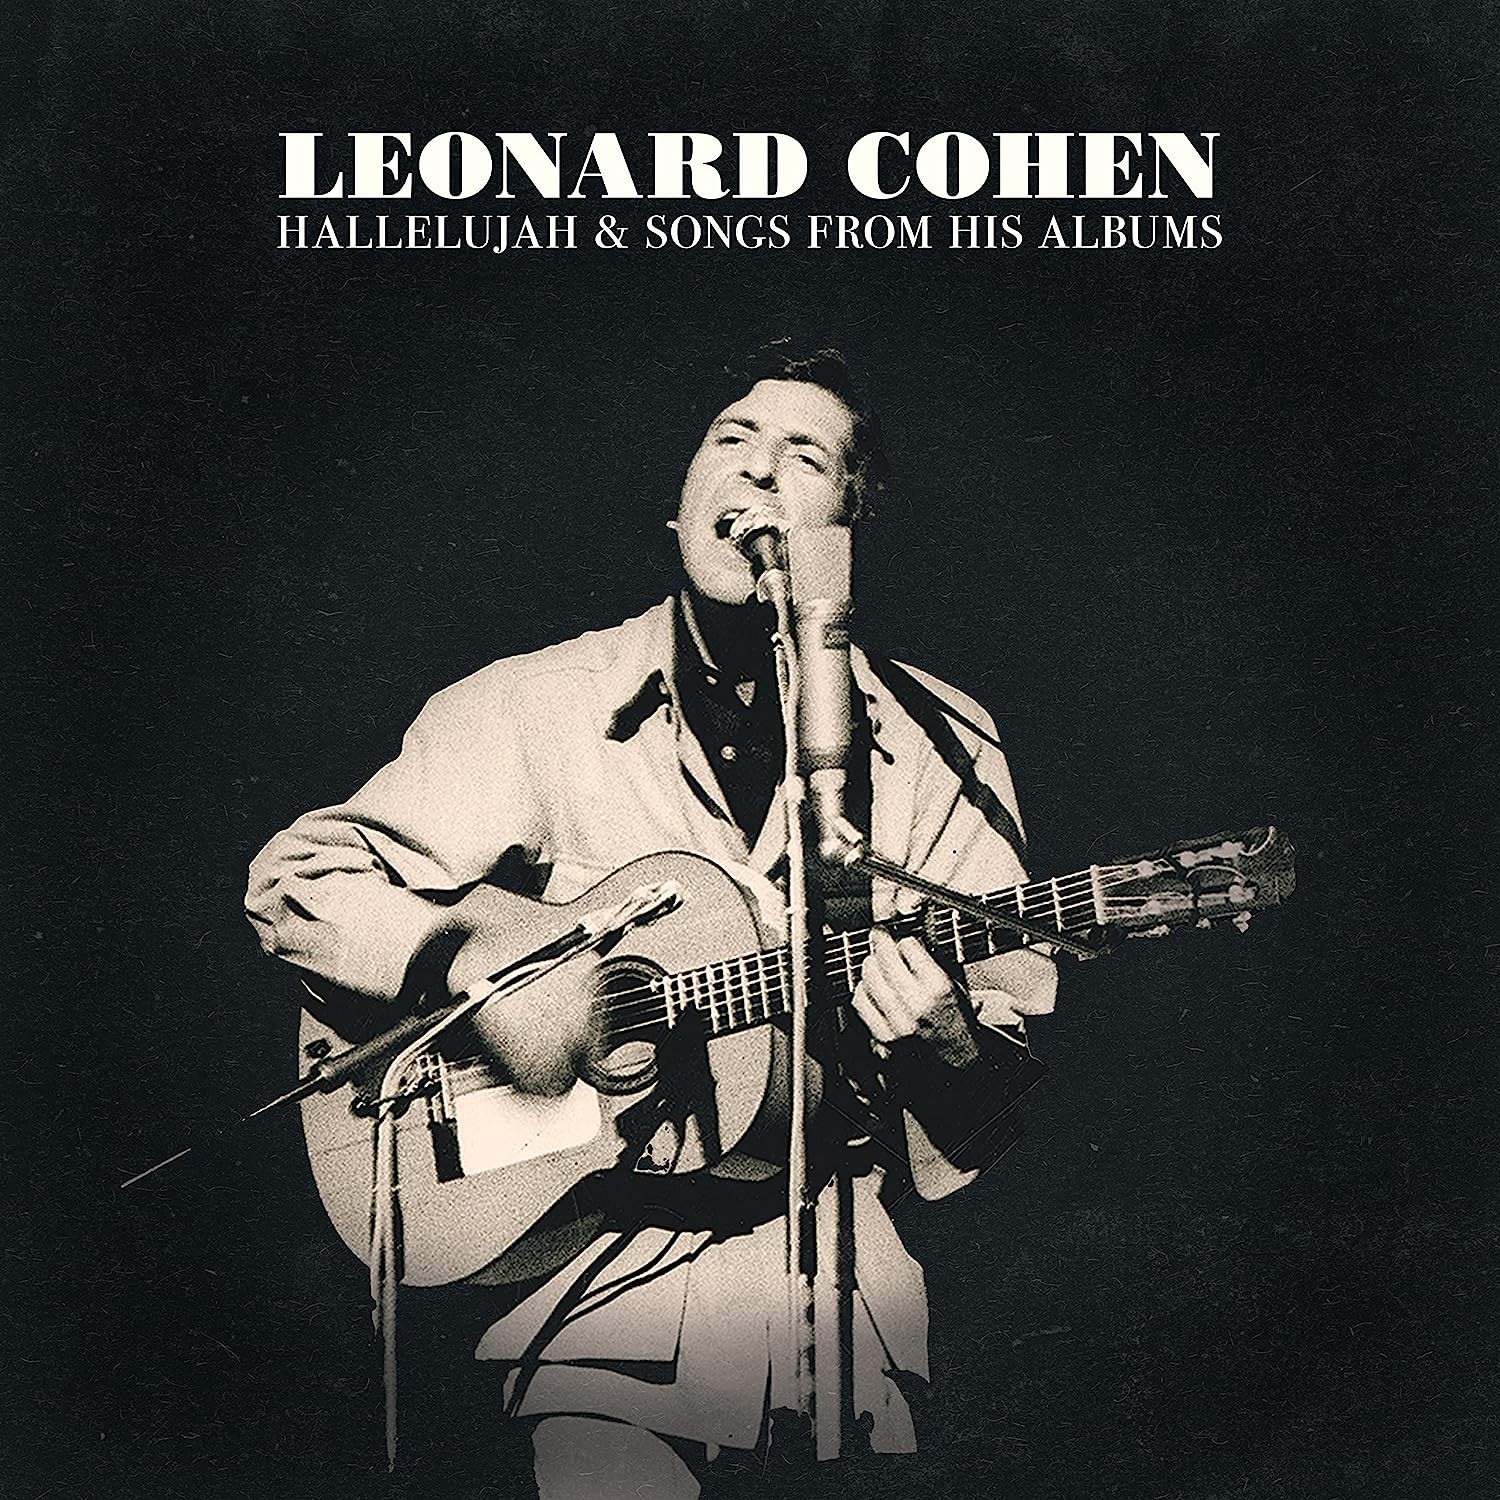 Vinile Leonard Cohen - Hallelujah & Songs From His Albums 2 Lp NUOVO SIGILLATO EDIZIONE DEL SUBITO DISPONIBILE blu